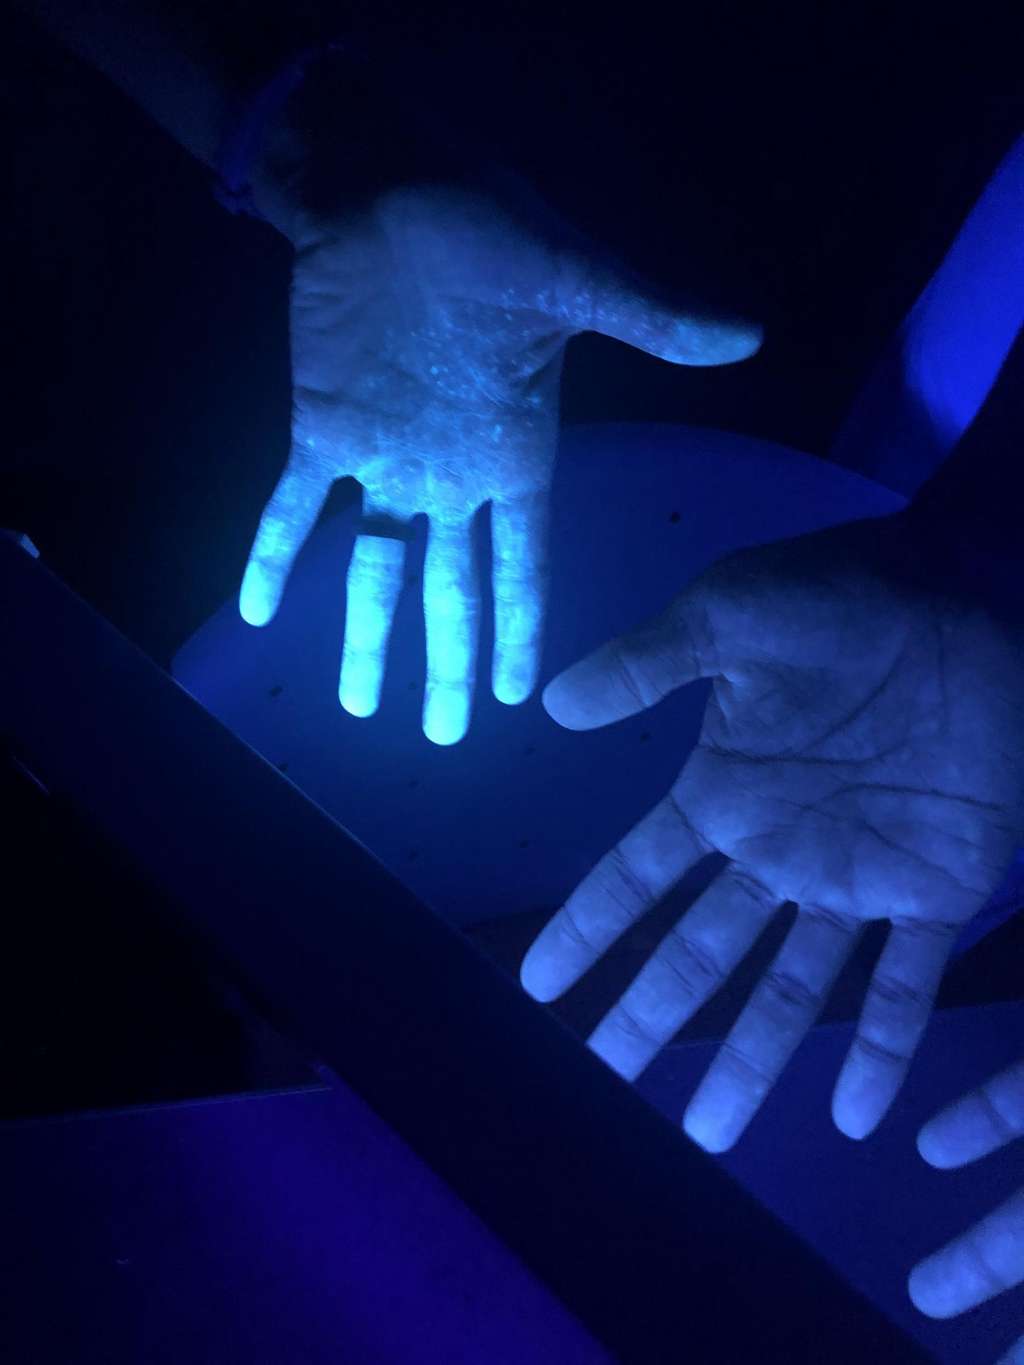 Malgré le port de protections lors de l'expérience, les mains de certains volontaires sont contaminées par le liquide phosphorescent quand ils ont retiré leurs gants. © Rami A. Ahmed, D.O.